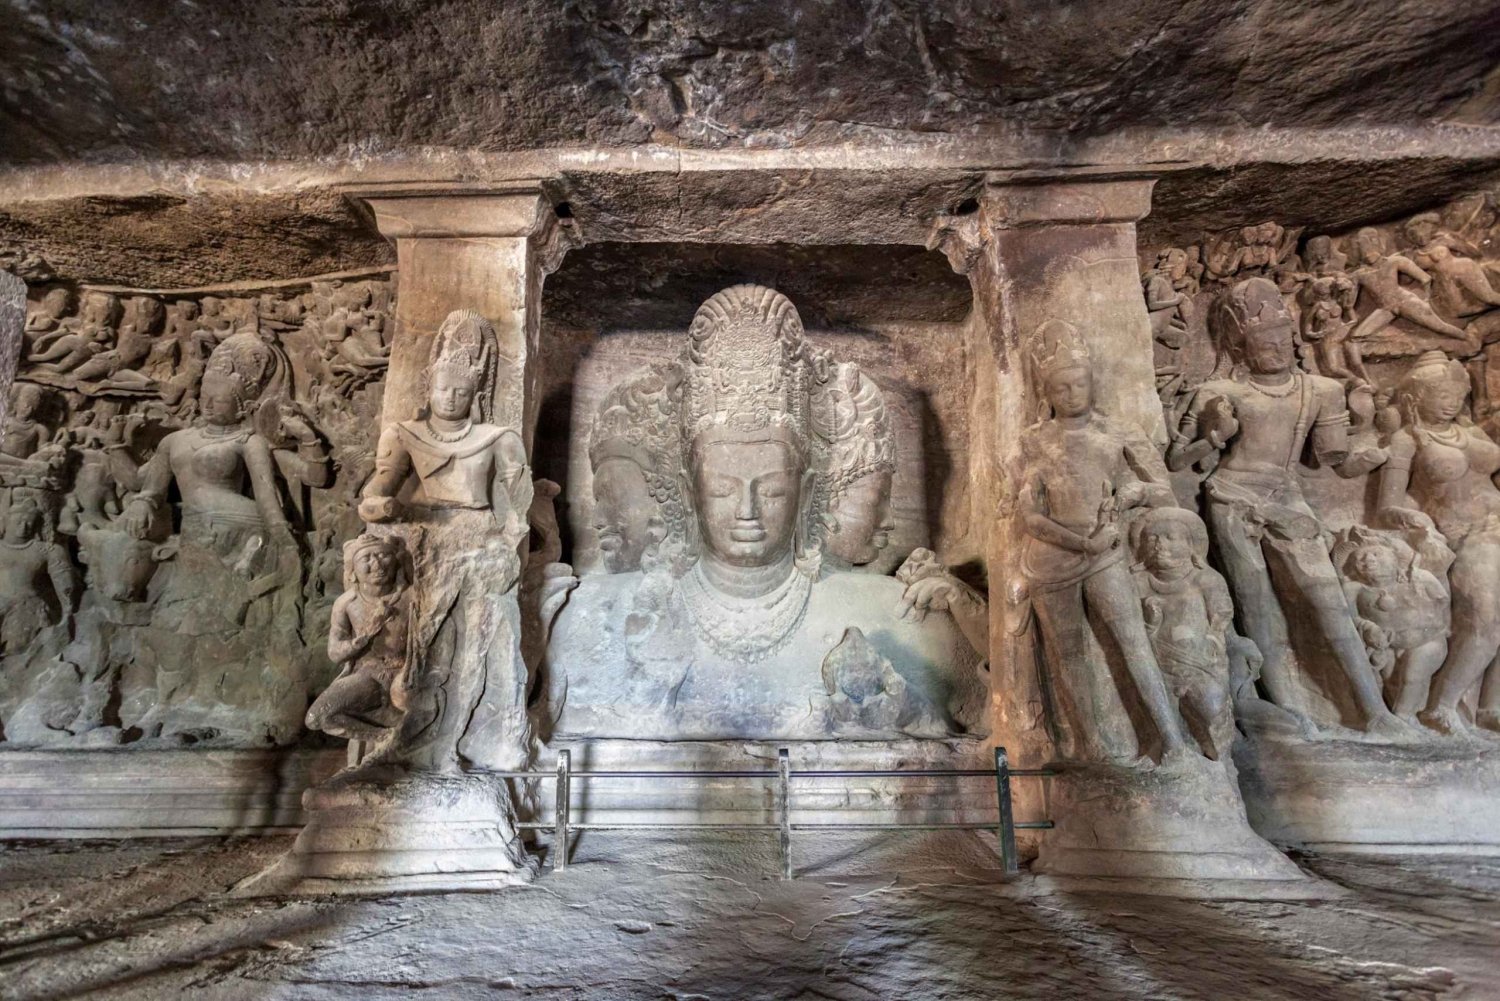 Cavernas de Elephanta: Excursão particular de meio dia saindo de Mumbai